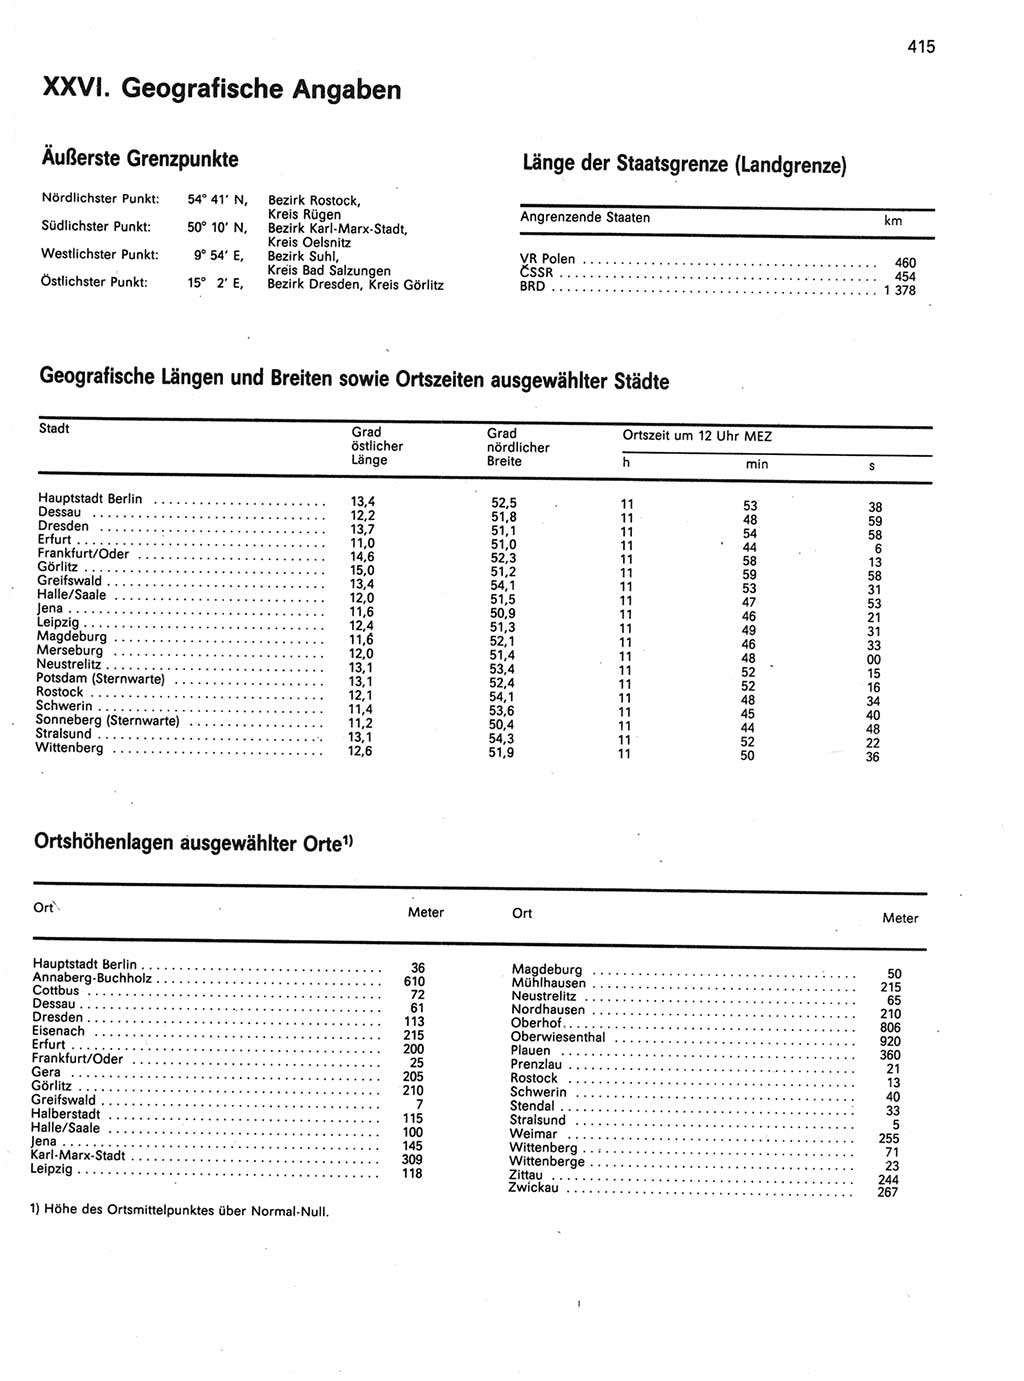 Statistisches Jahrbuch der Deutschen Demokratischen Republik (DDR) 1989, Seite 415 (Stat. Jb. DDR 1989, S. 415)